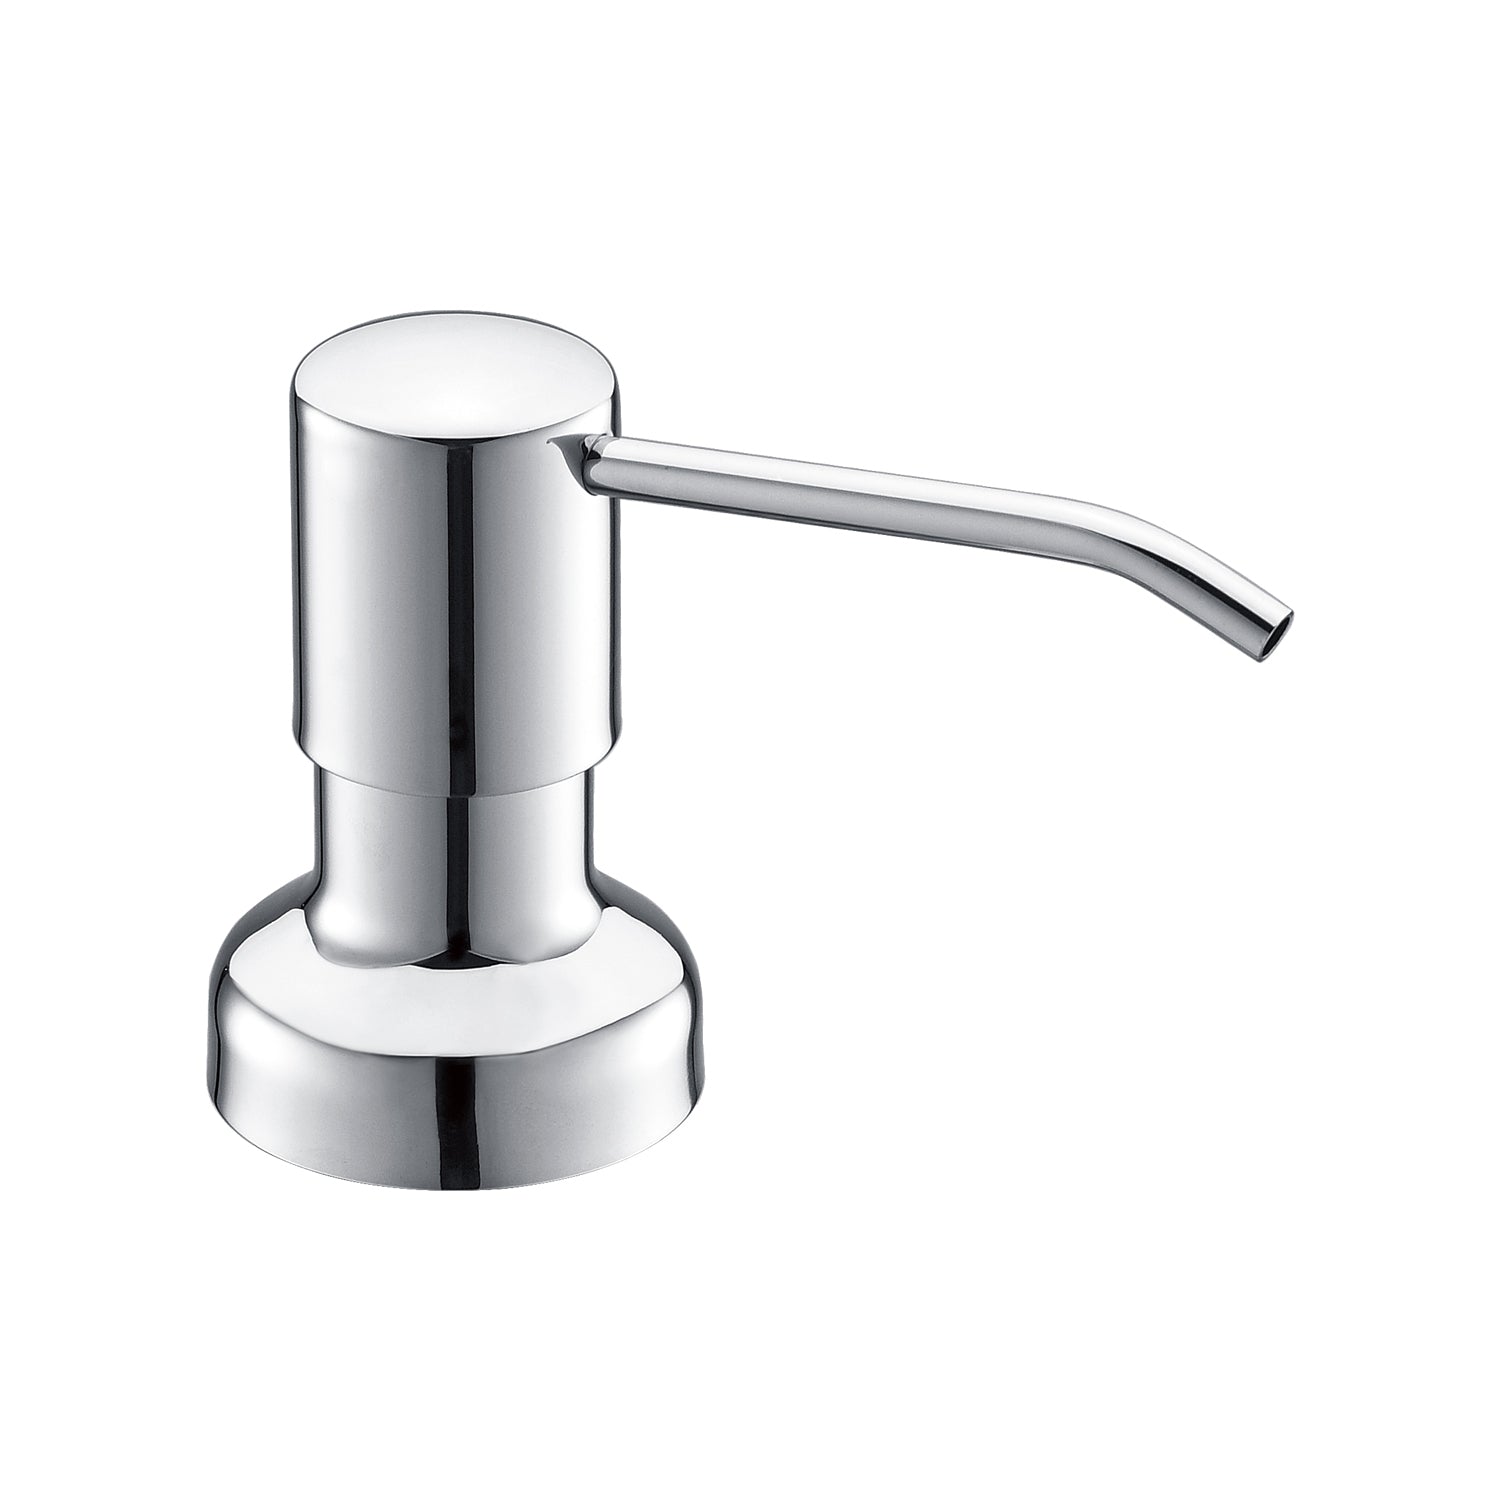 DAX Round Kitchen Sink Soap Dispenser, Deck Mount, Brass Body, 2-1/2 x 12-3/8 x 3-5/8 Inches (DAX-1002)